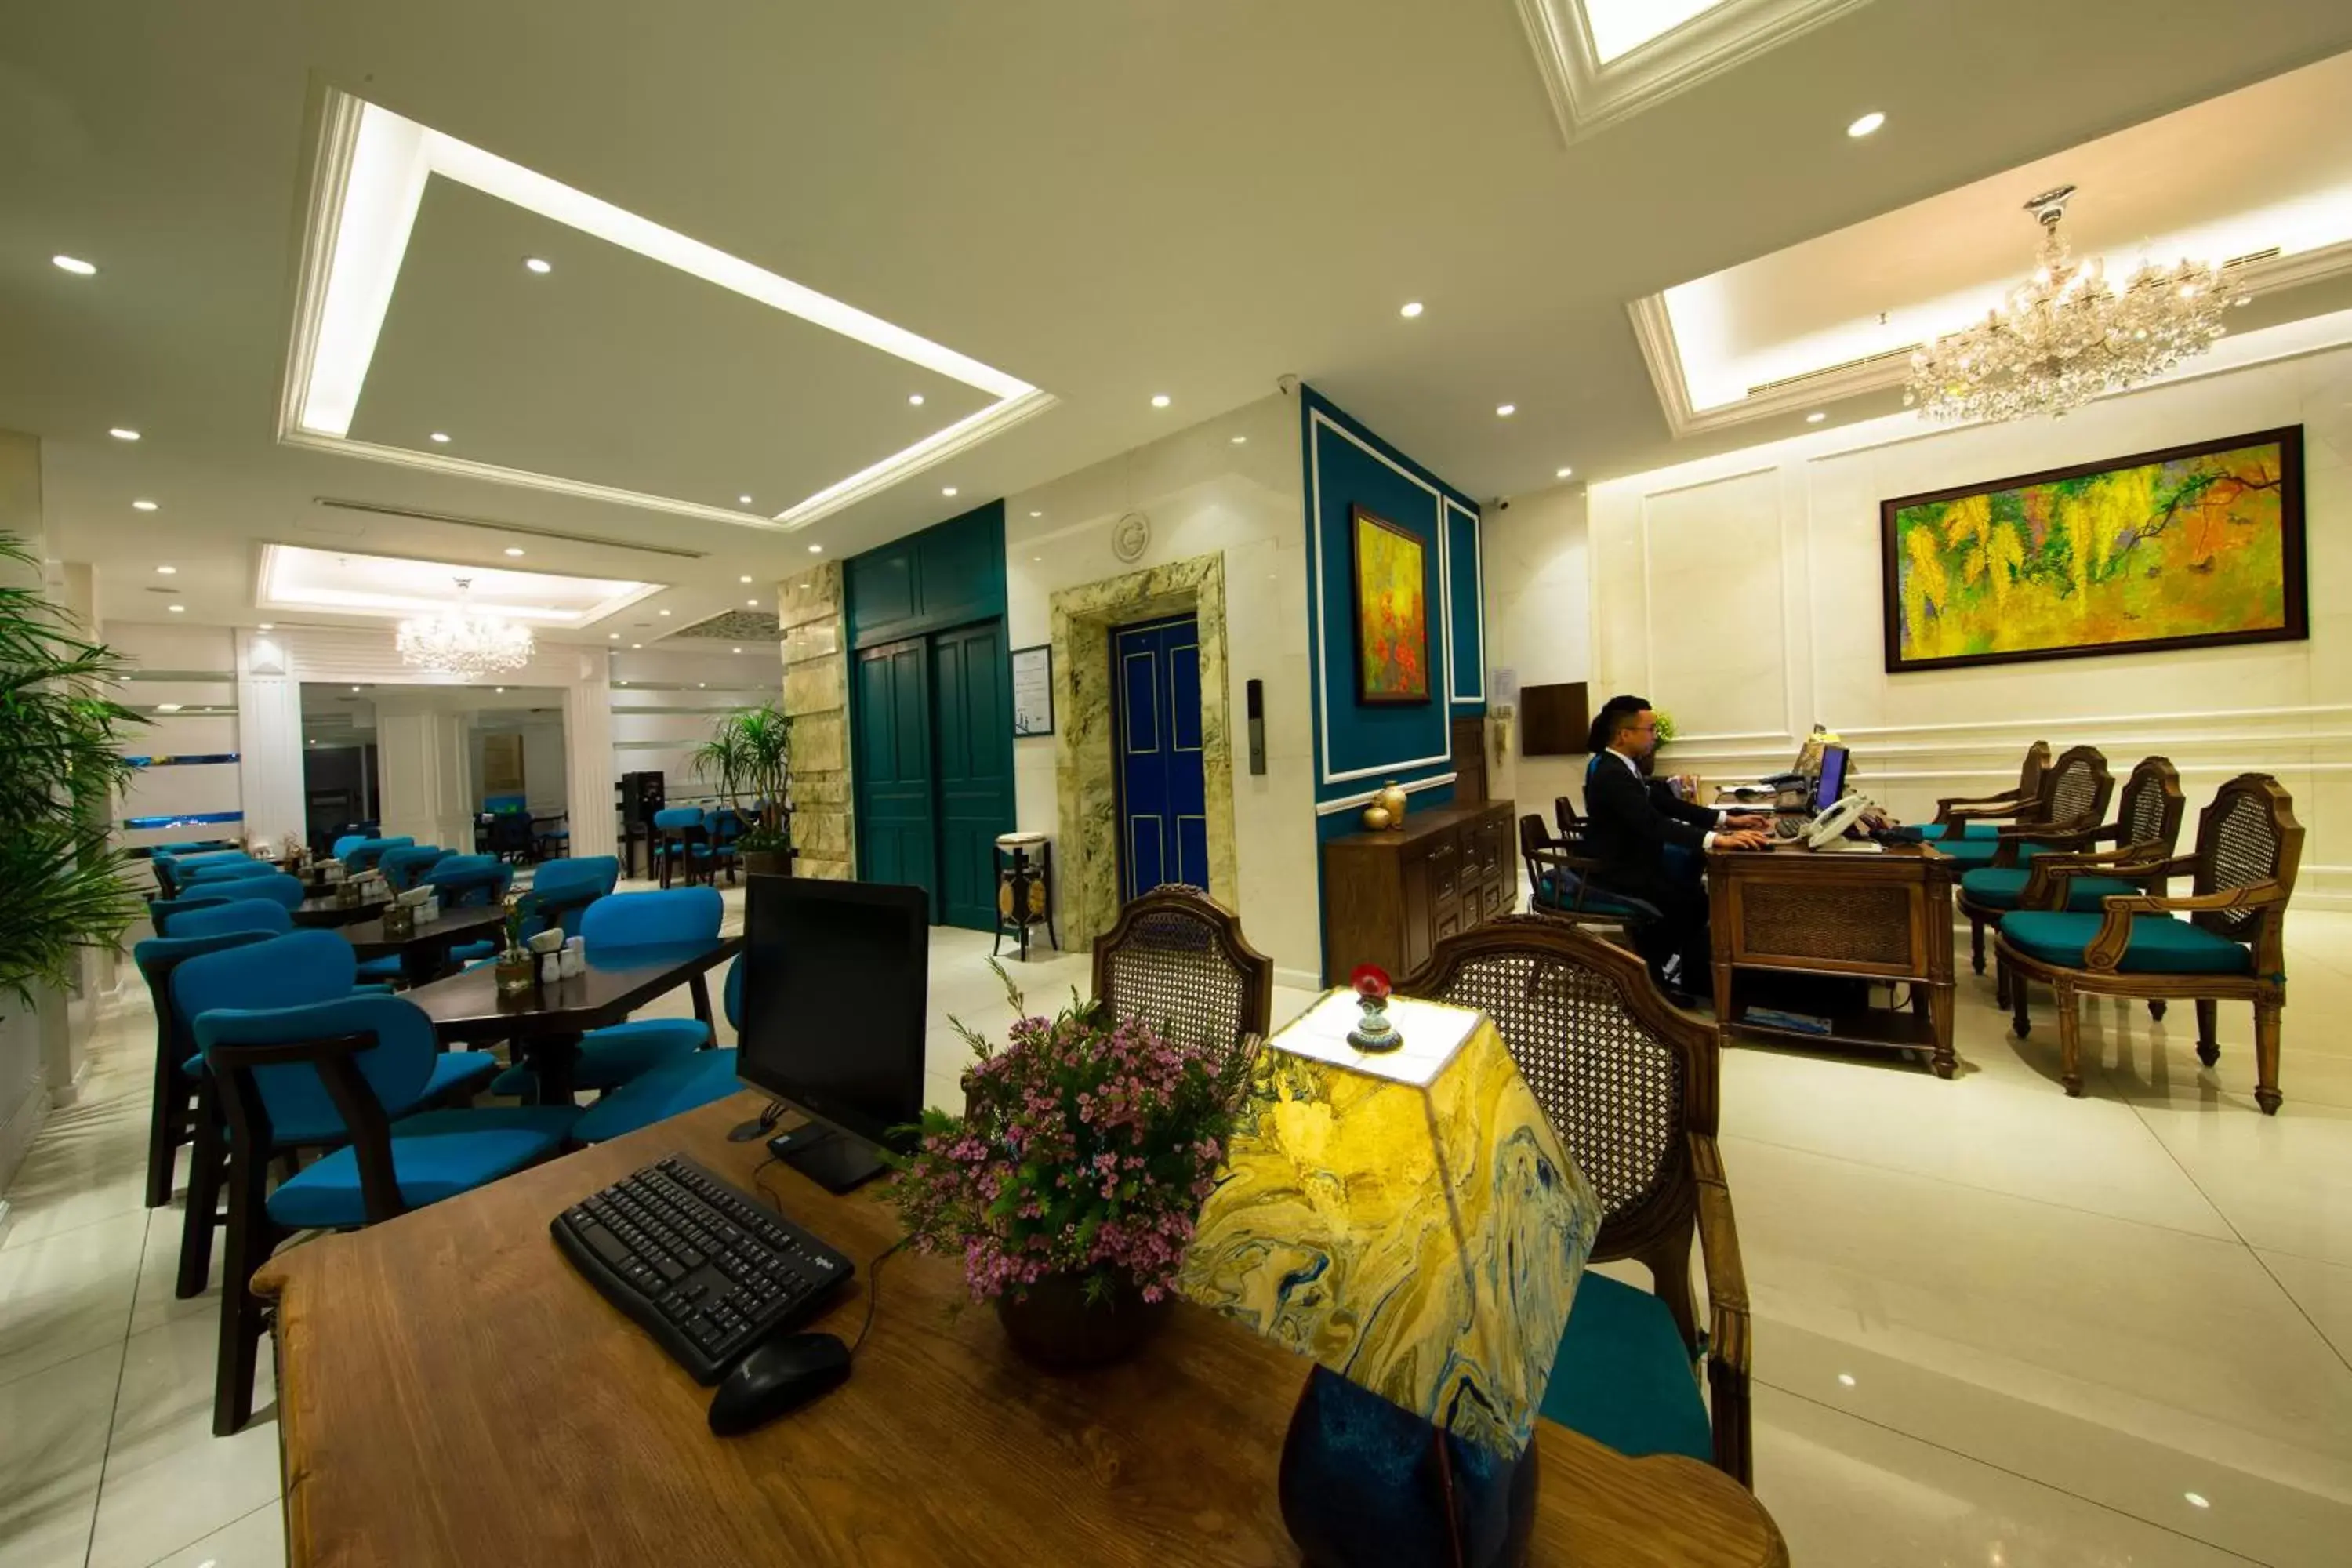 Lobby or reception in Alagon Saigon Hotel & Spa